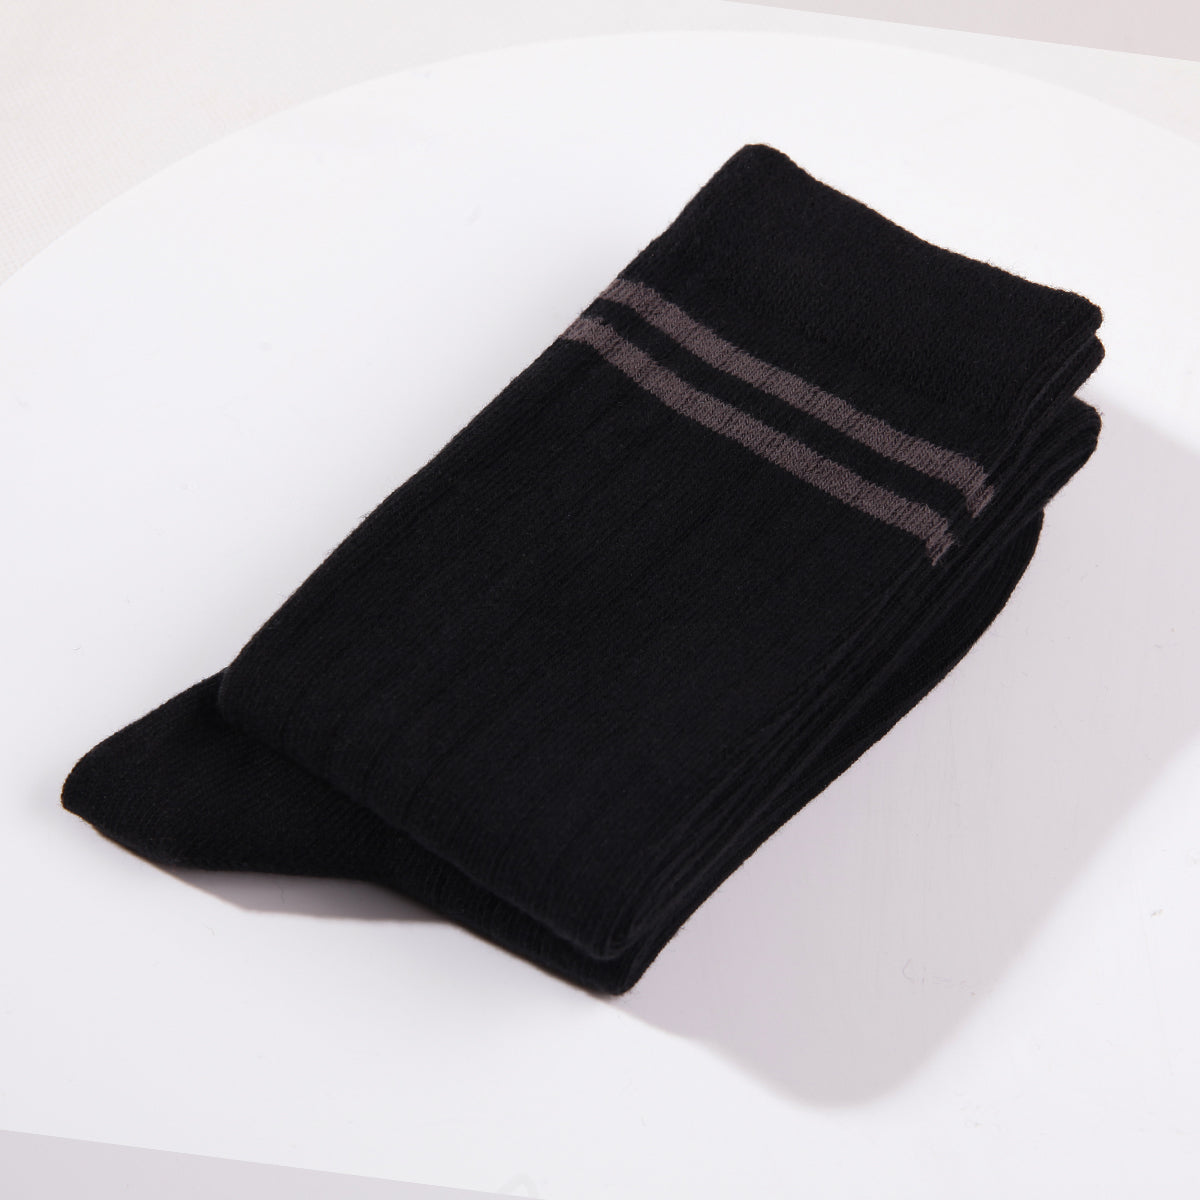 SOLAX 3 pairs Women's Knee Socks